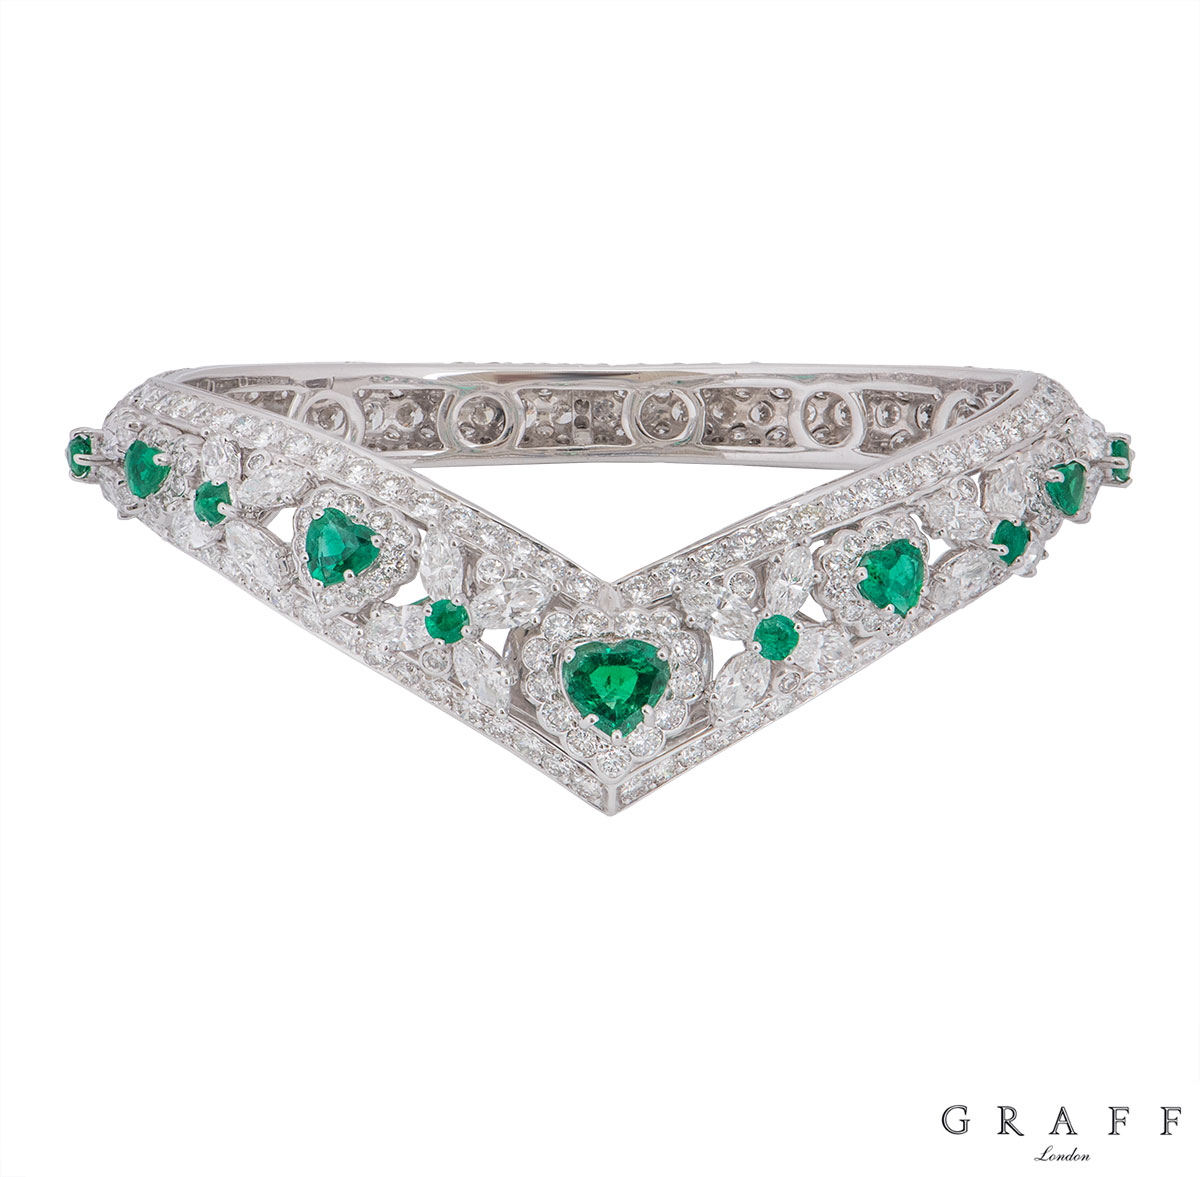 Graff White Gold Diamond, Emerald, Ruby & Sapphire Set Bangles